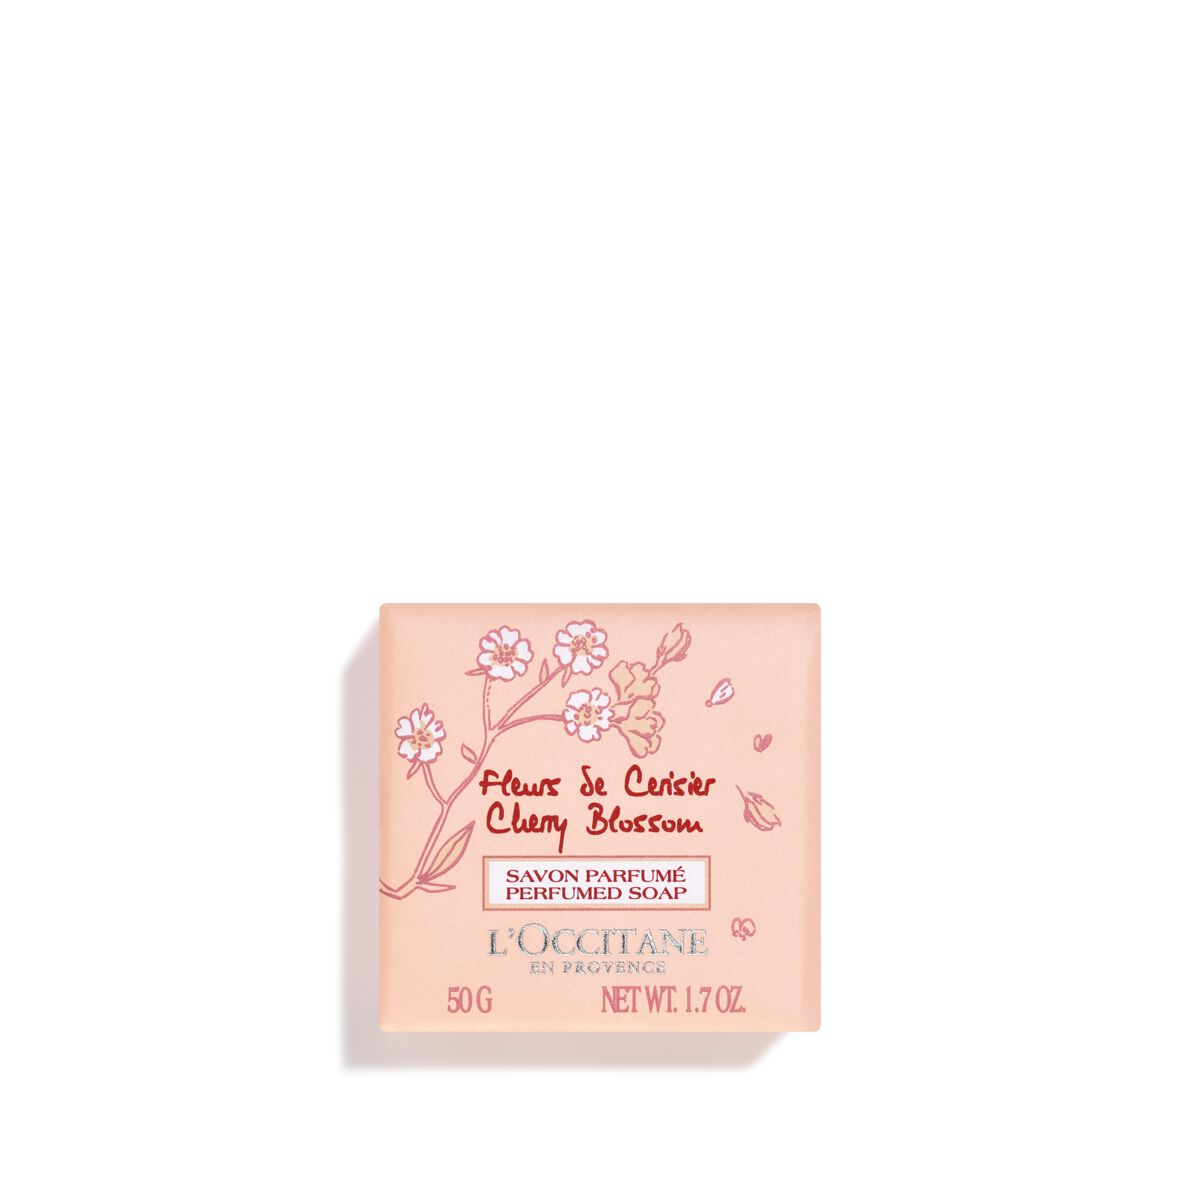 Savon Parfumé Fleurs de Cerisier - 50 - L'Occitane en Provence von L'Occitane en Provence